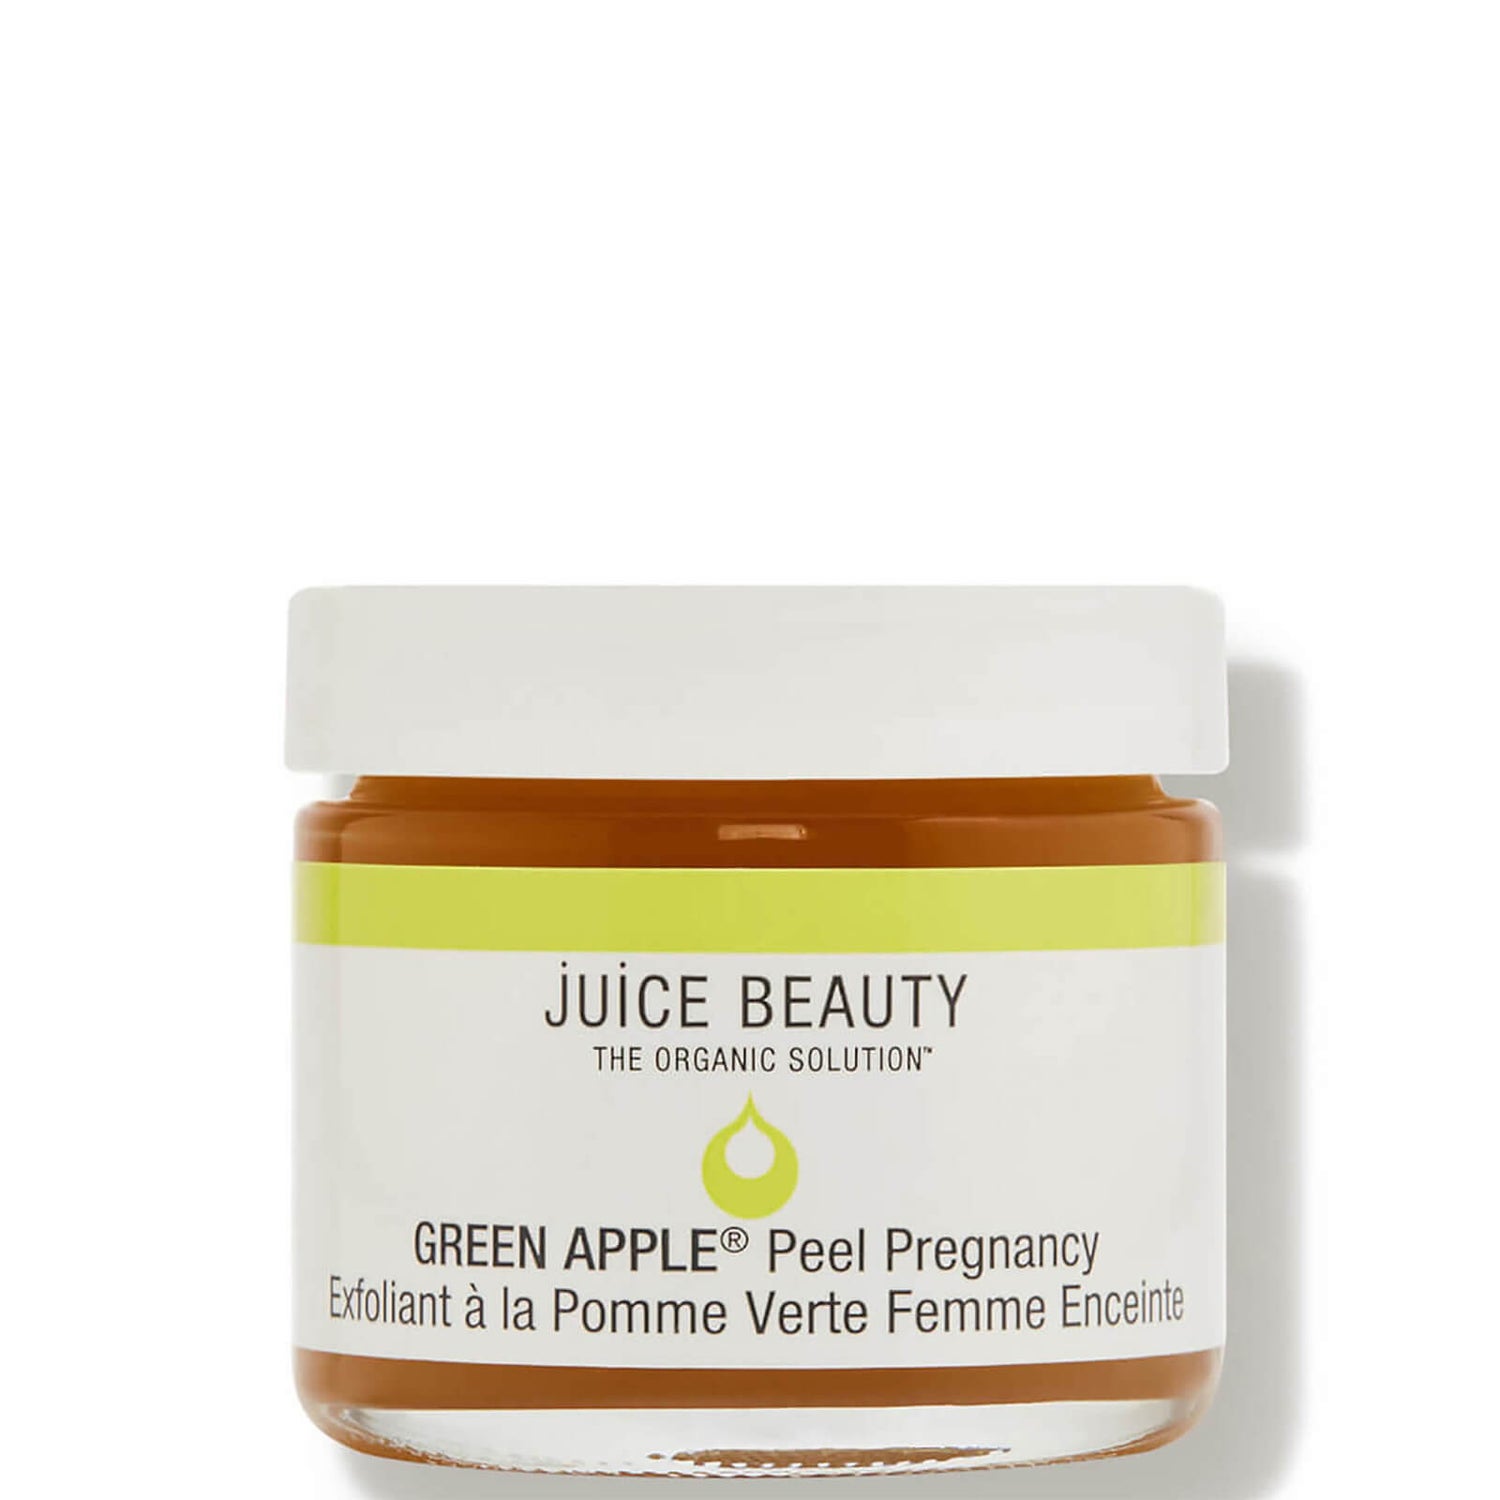 Juice Beauty GREEN APPLE Peel Pregnancy (2 fl. oz.)